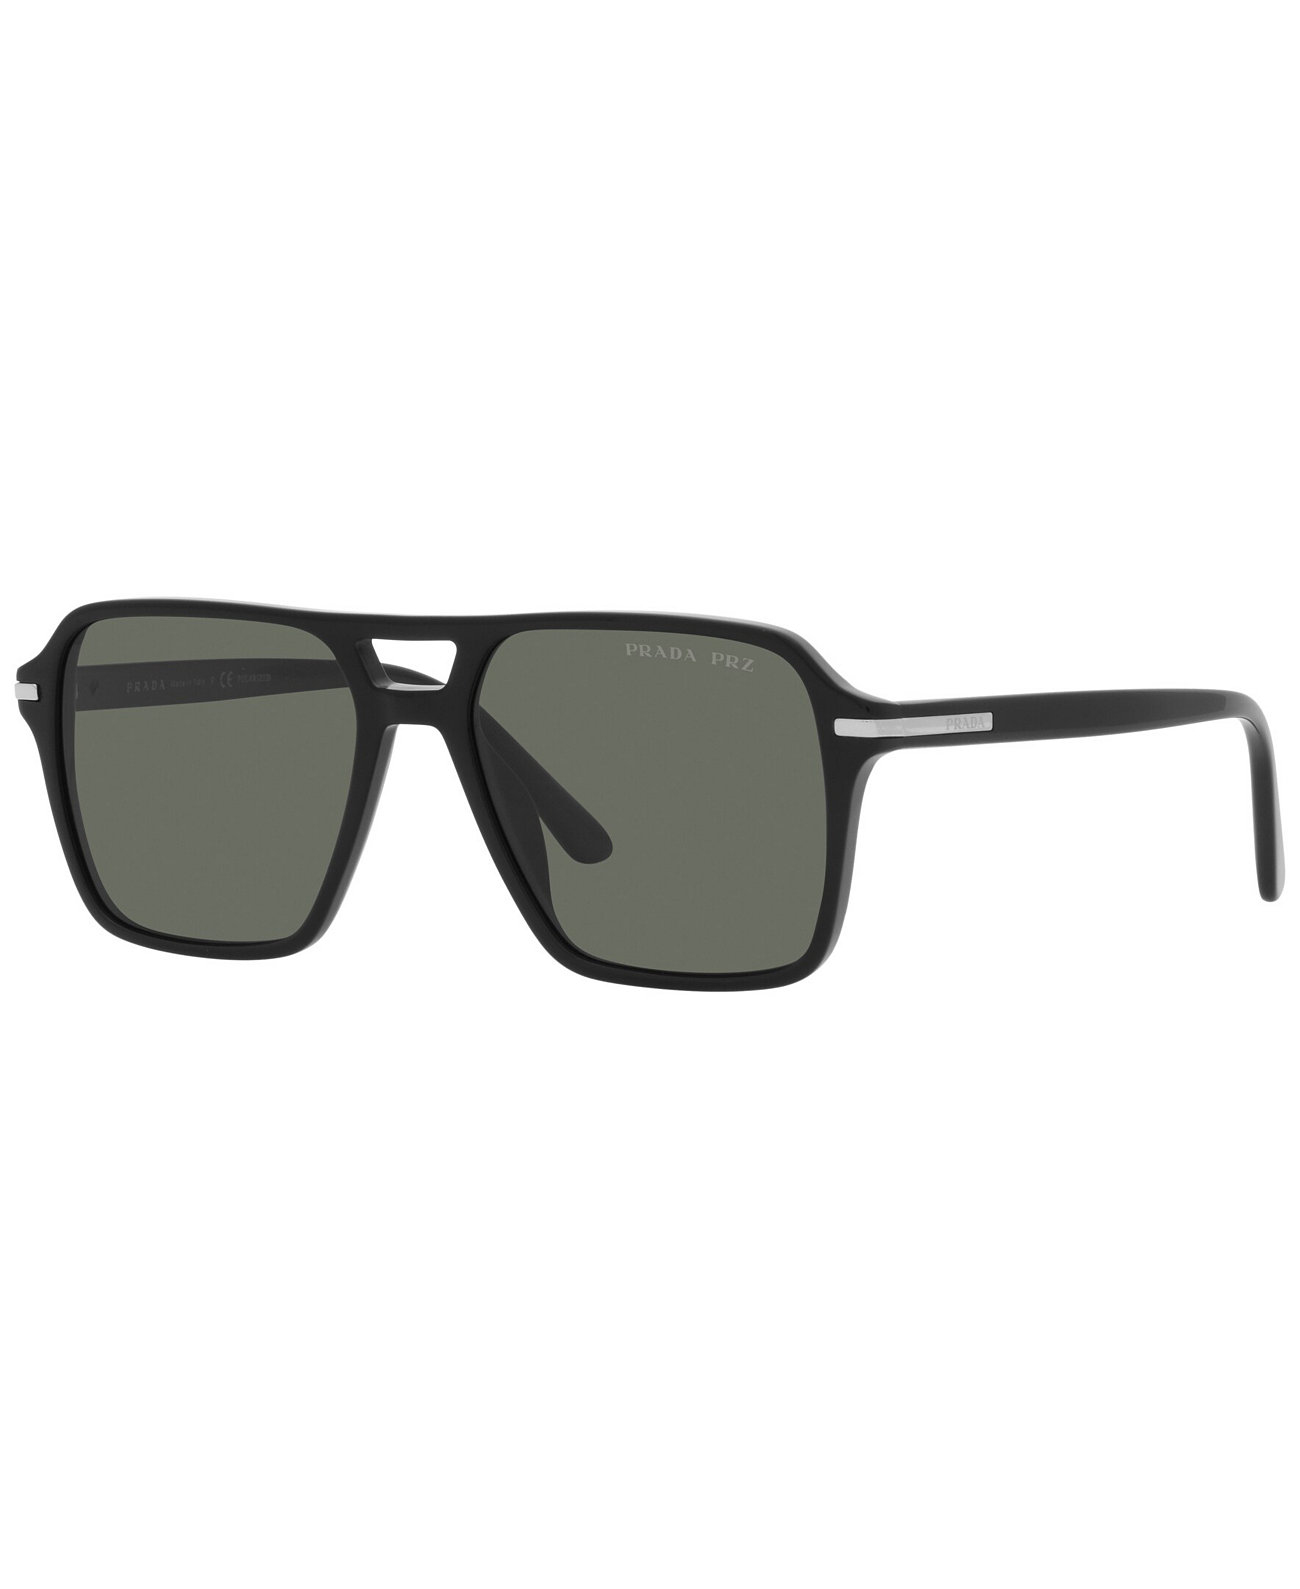 Мужские поляризованные солнцезащитные очки, 55 Prada